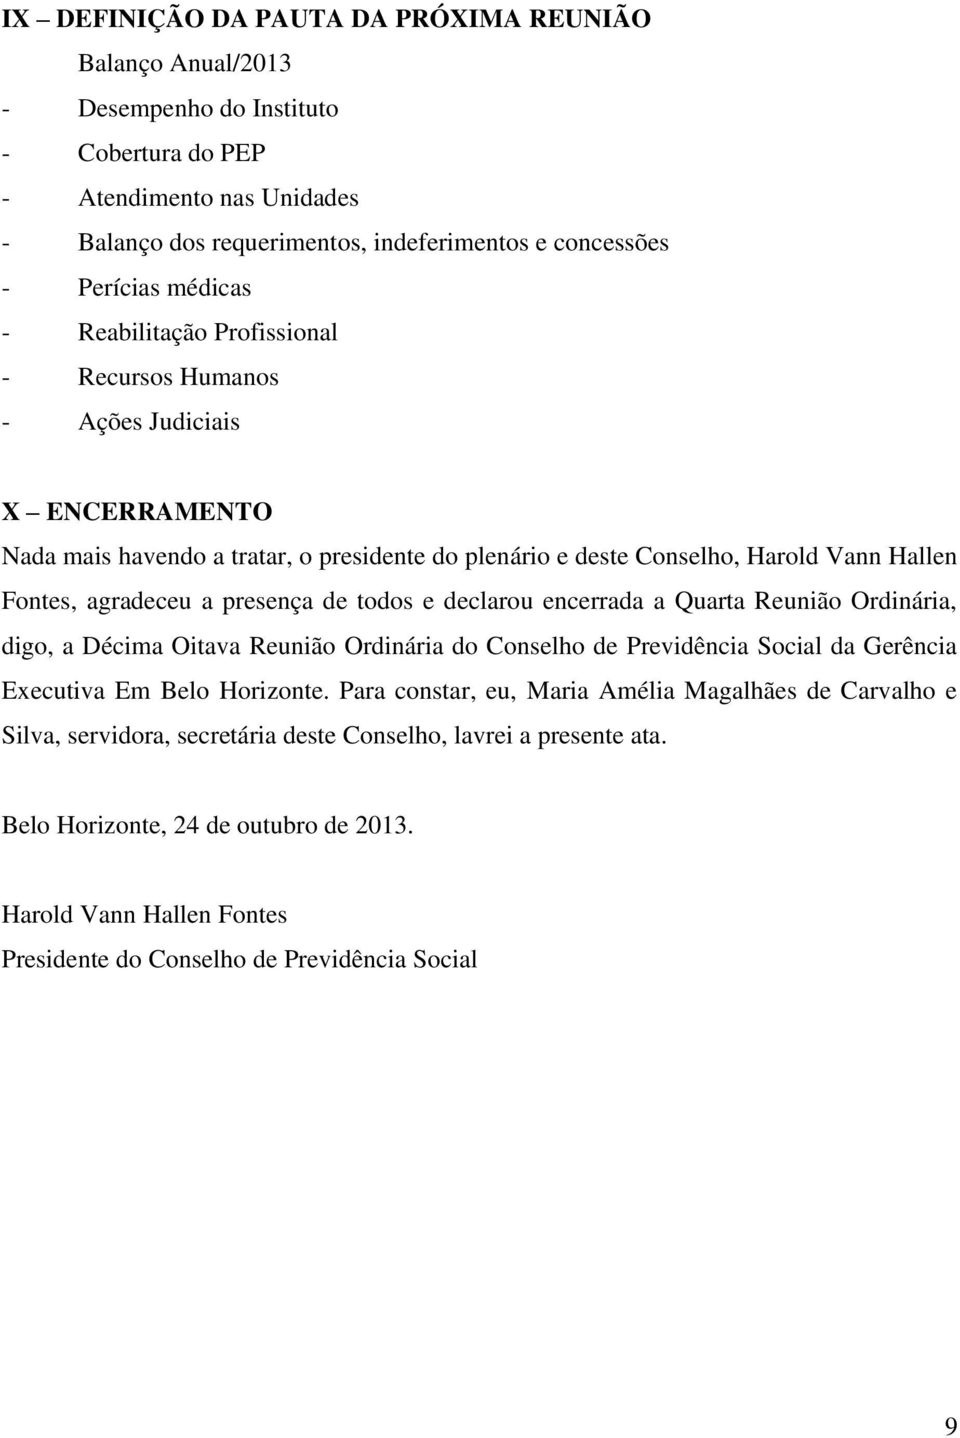 presença de todos e declarou encerrada a Quarta Reunião Ordinária, digo, a Décima Oitava Reunião Ordinária do Conselho de Previdência Social da Gerência Executiva Em Belo Horizonte.